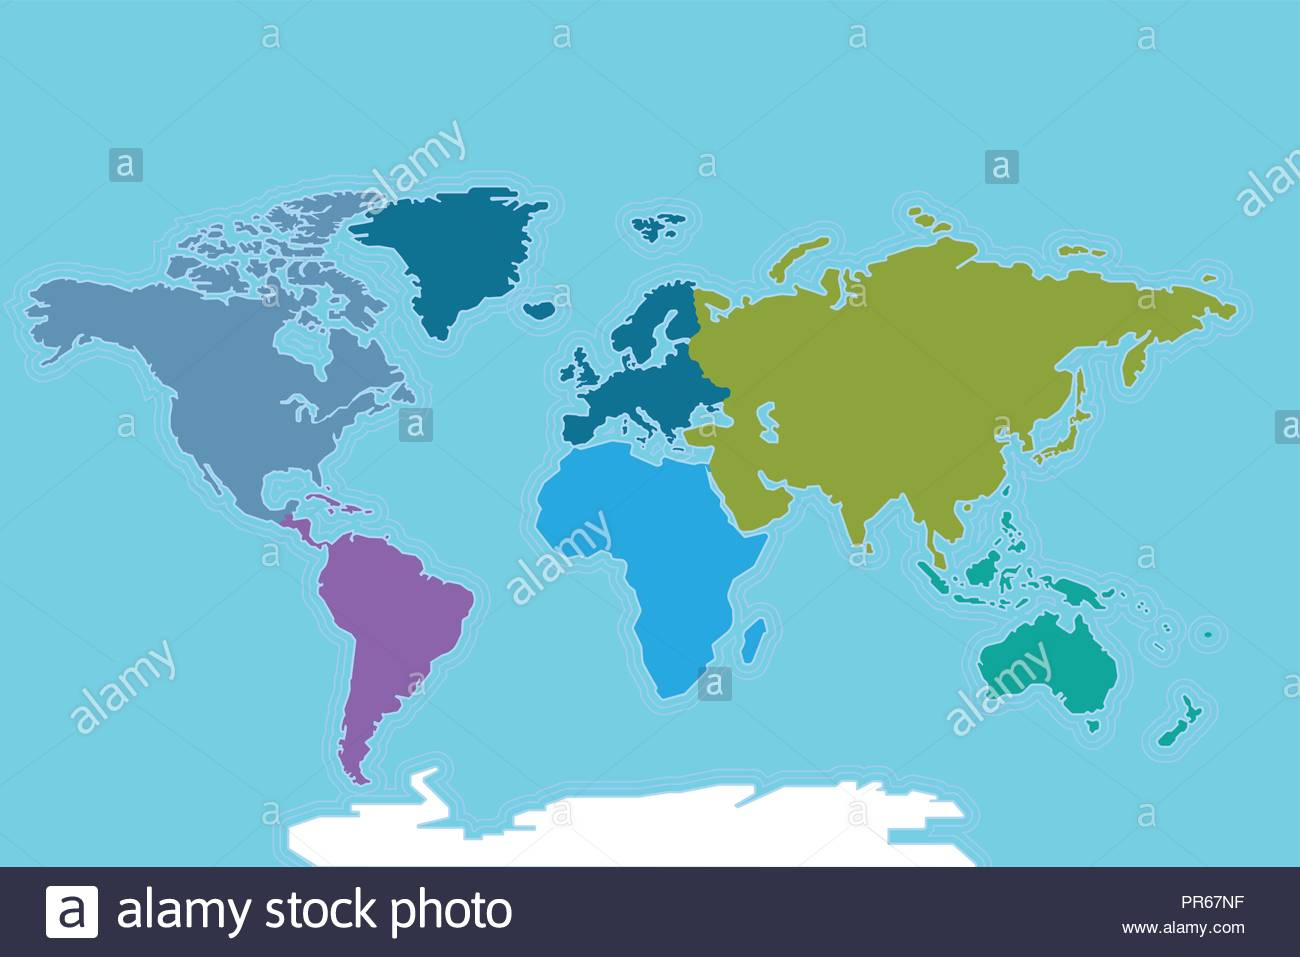 Carte Du Monde Avec Frontiere - 1Jour1Col dedans Un Carte Avec Les Continents Du Monde 